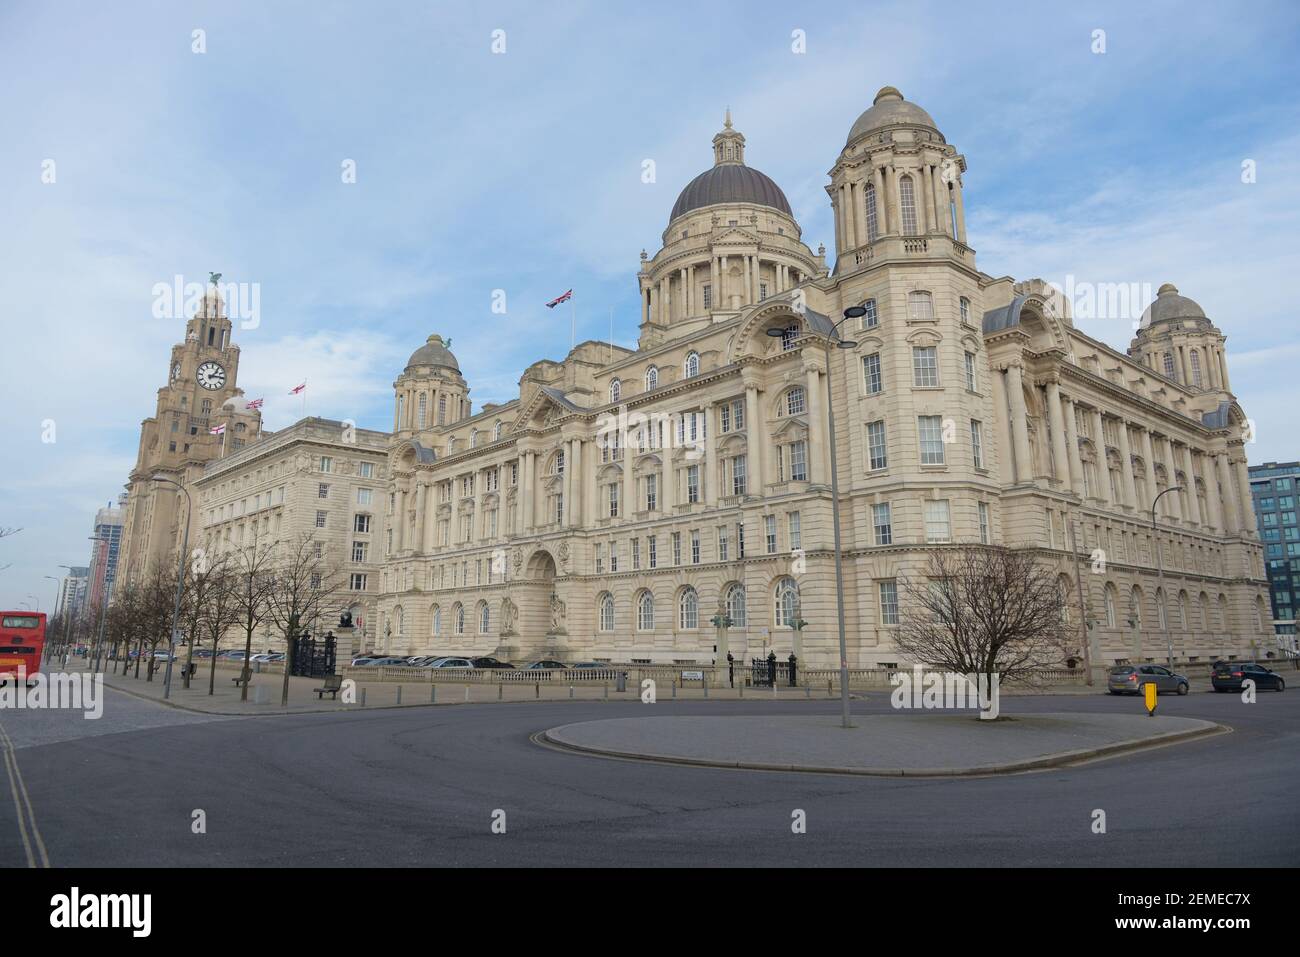 Liverpool, Royaume-Uni, 2 février 2020 : image à angle bas de l'édifice du port de liverpool, de l'édifice royal du foie et de l'édifice Cunard Banque D'Images